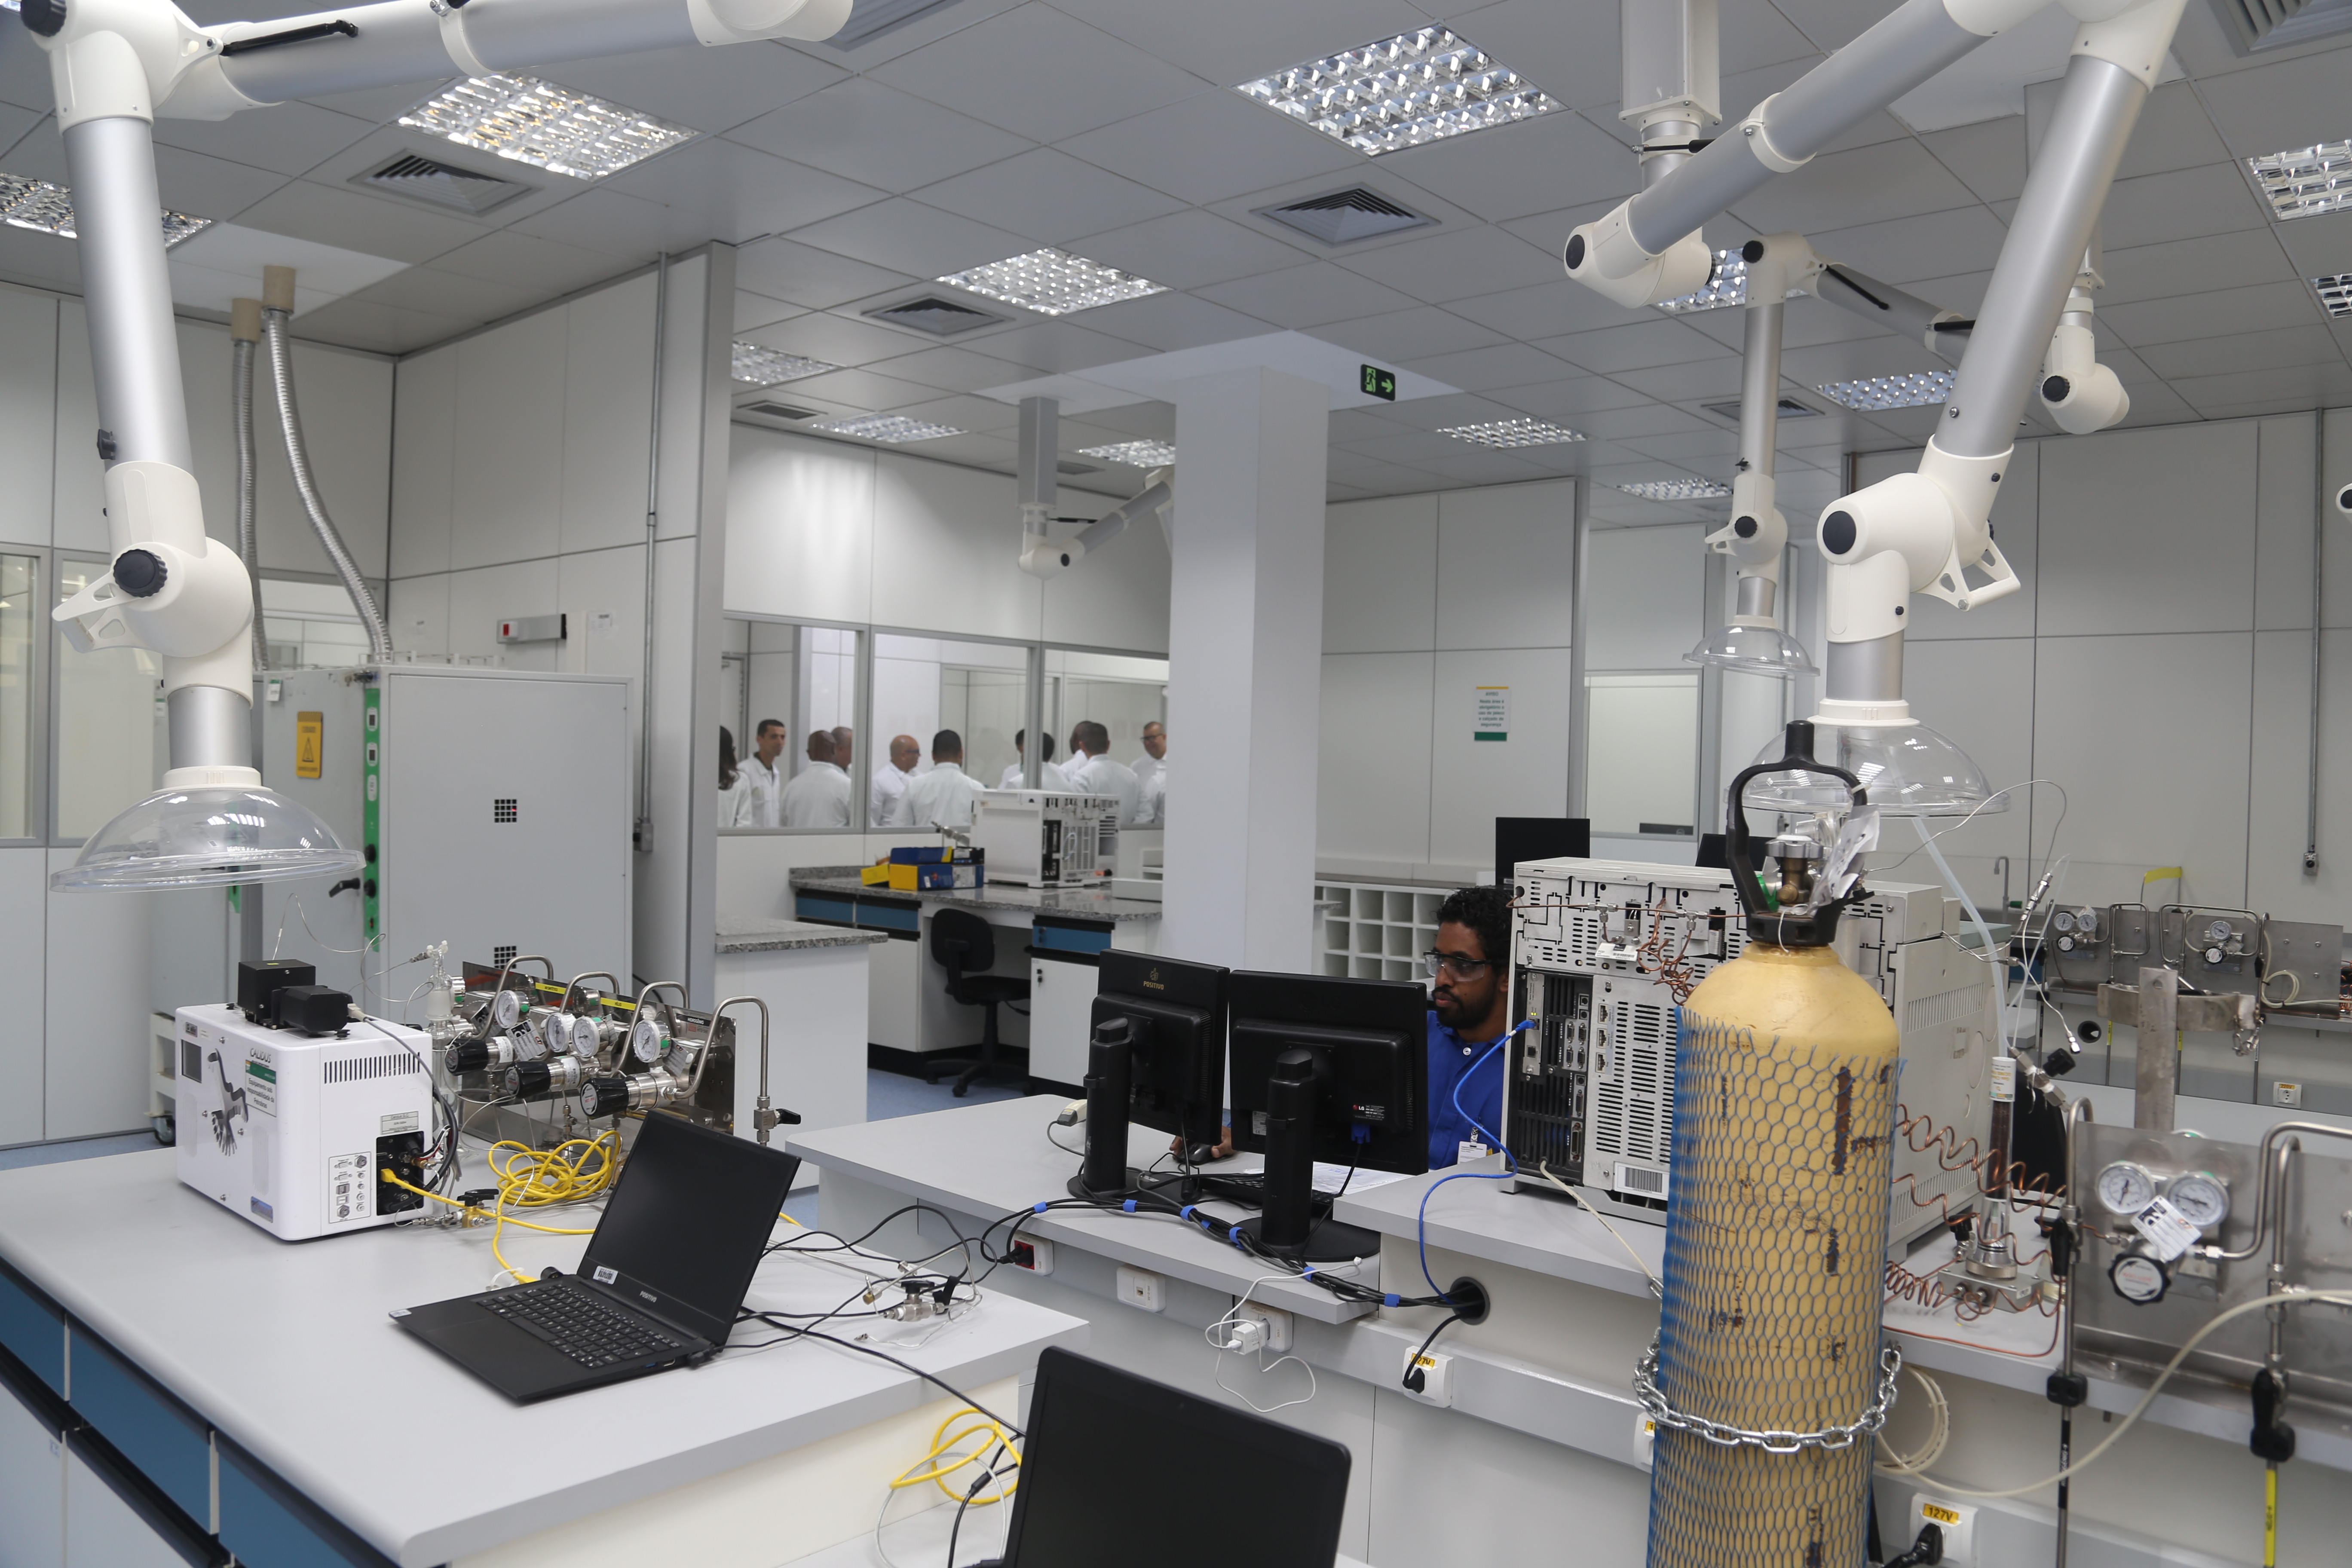 Sala do laboratório de fluidos, com equipamentos, notebooks e monitores sobre bancadas e um pesquisador de camisa azul, sentado ao fundo, olhando para um dos monitores